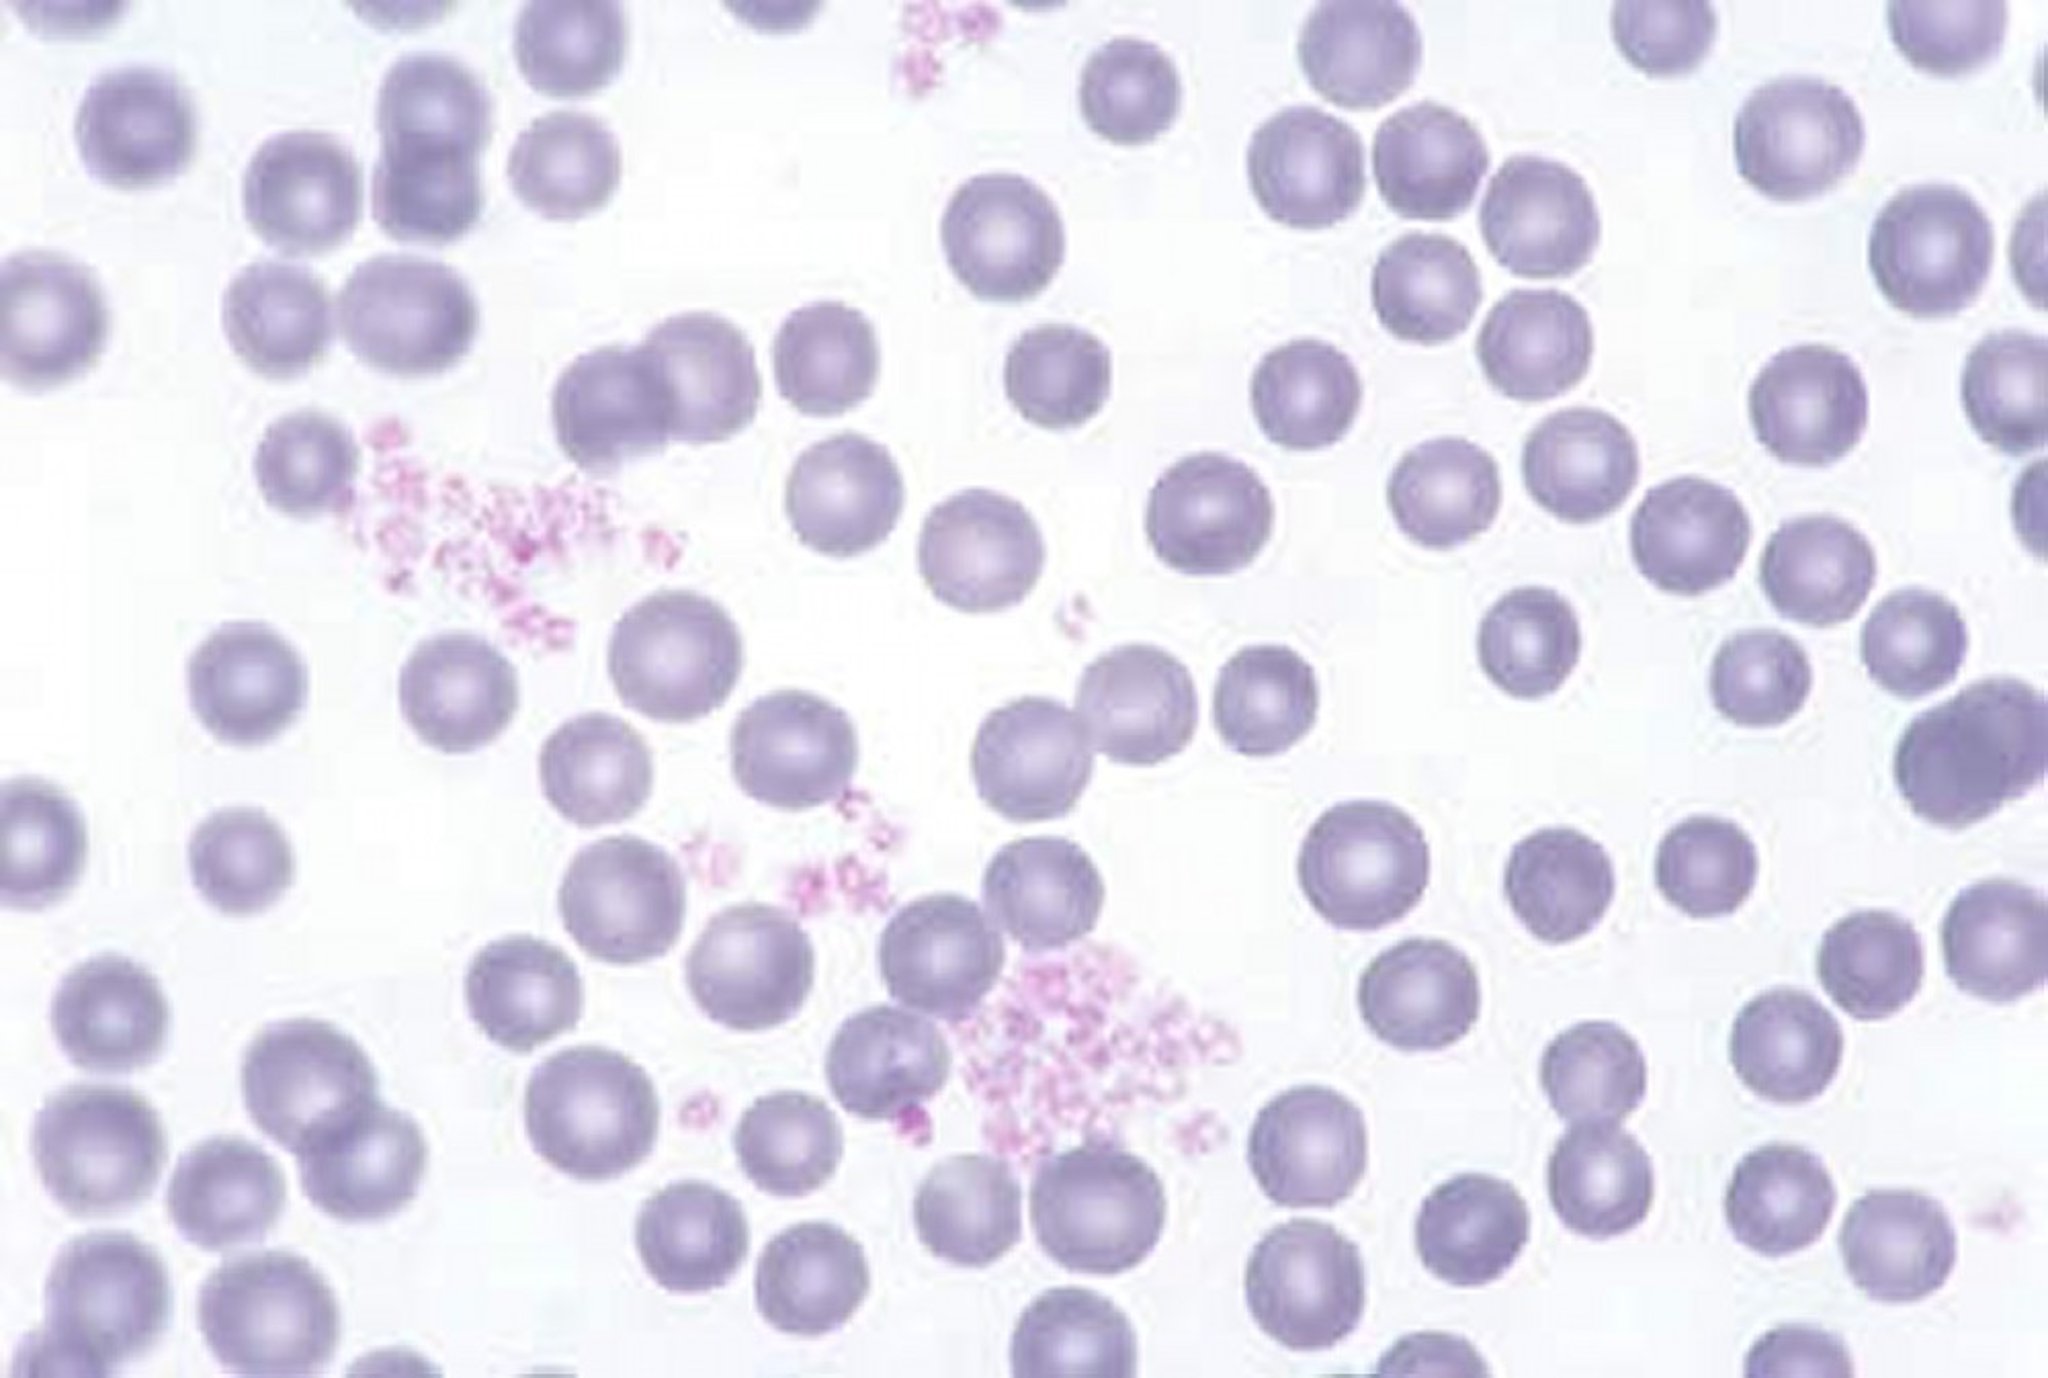 Bovine blood smear, platelets